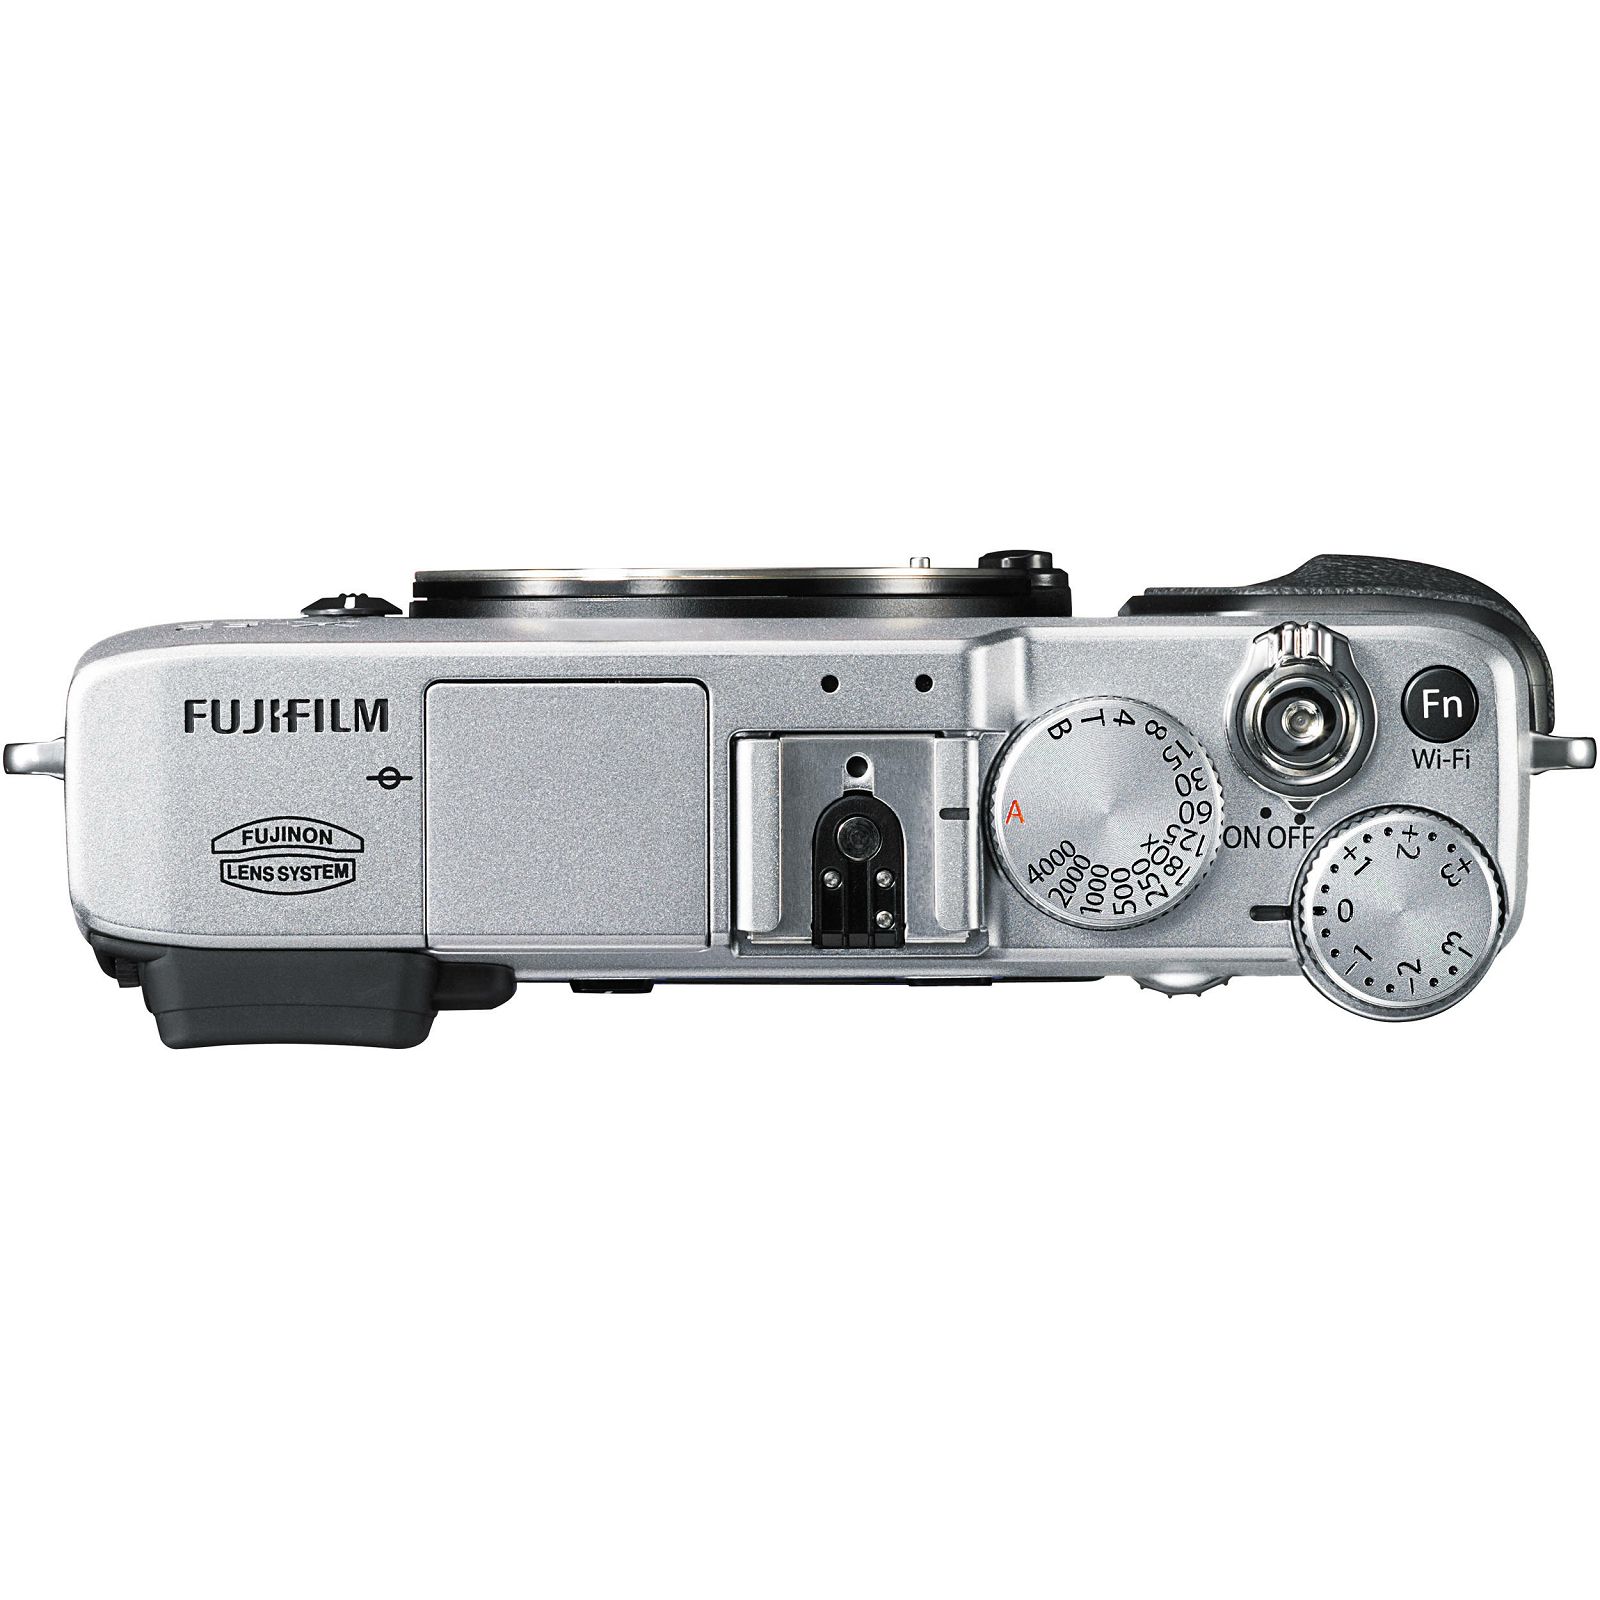 Fujifilm X-E2 Body Silver srebreni Digitalni fotoaparat Mirrorless camera Fuji Finepix XE2